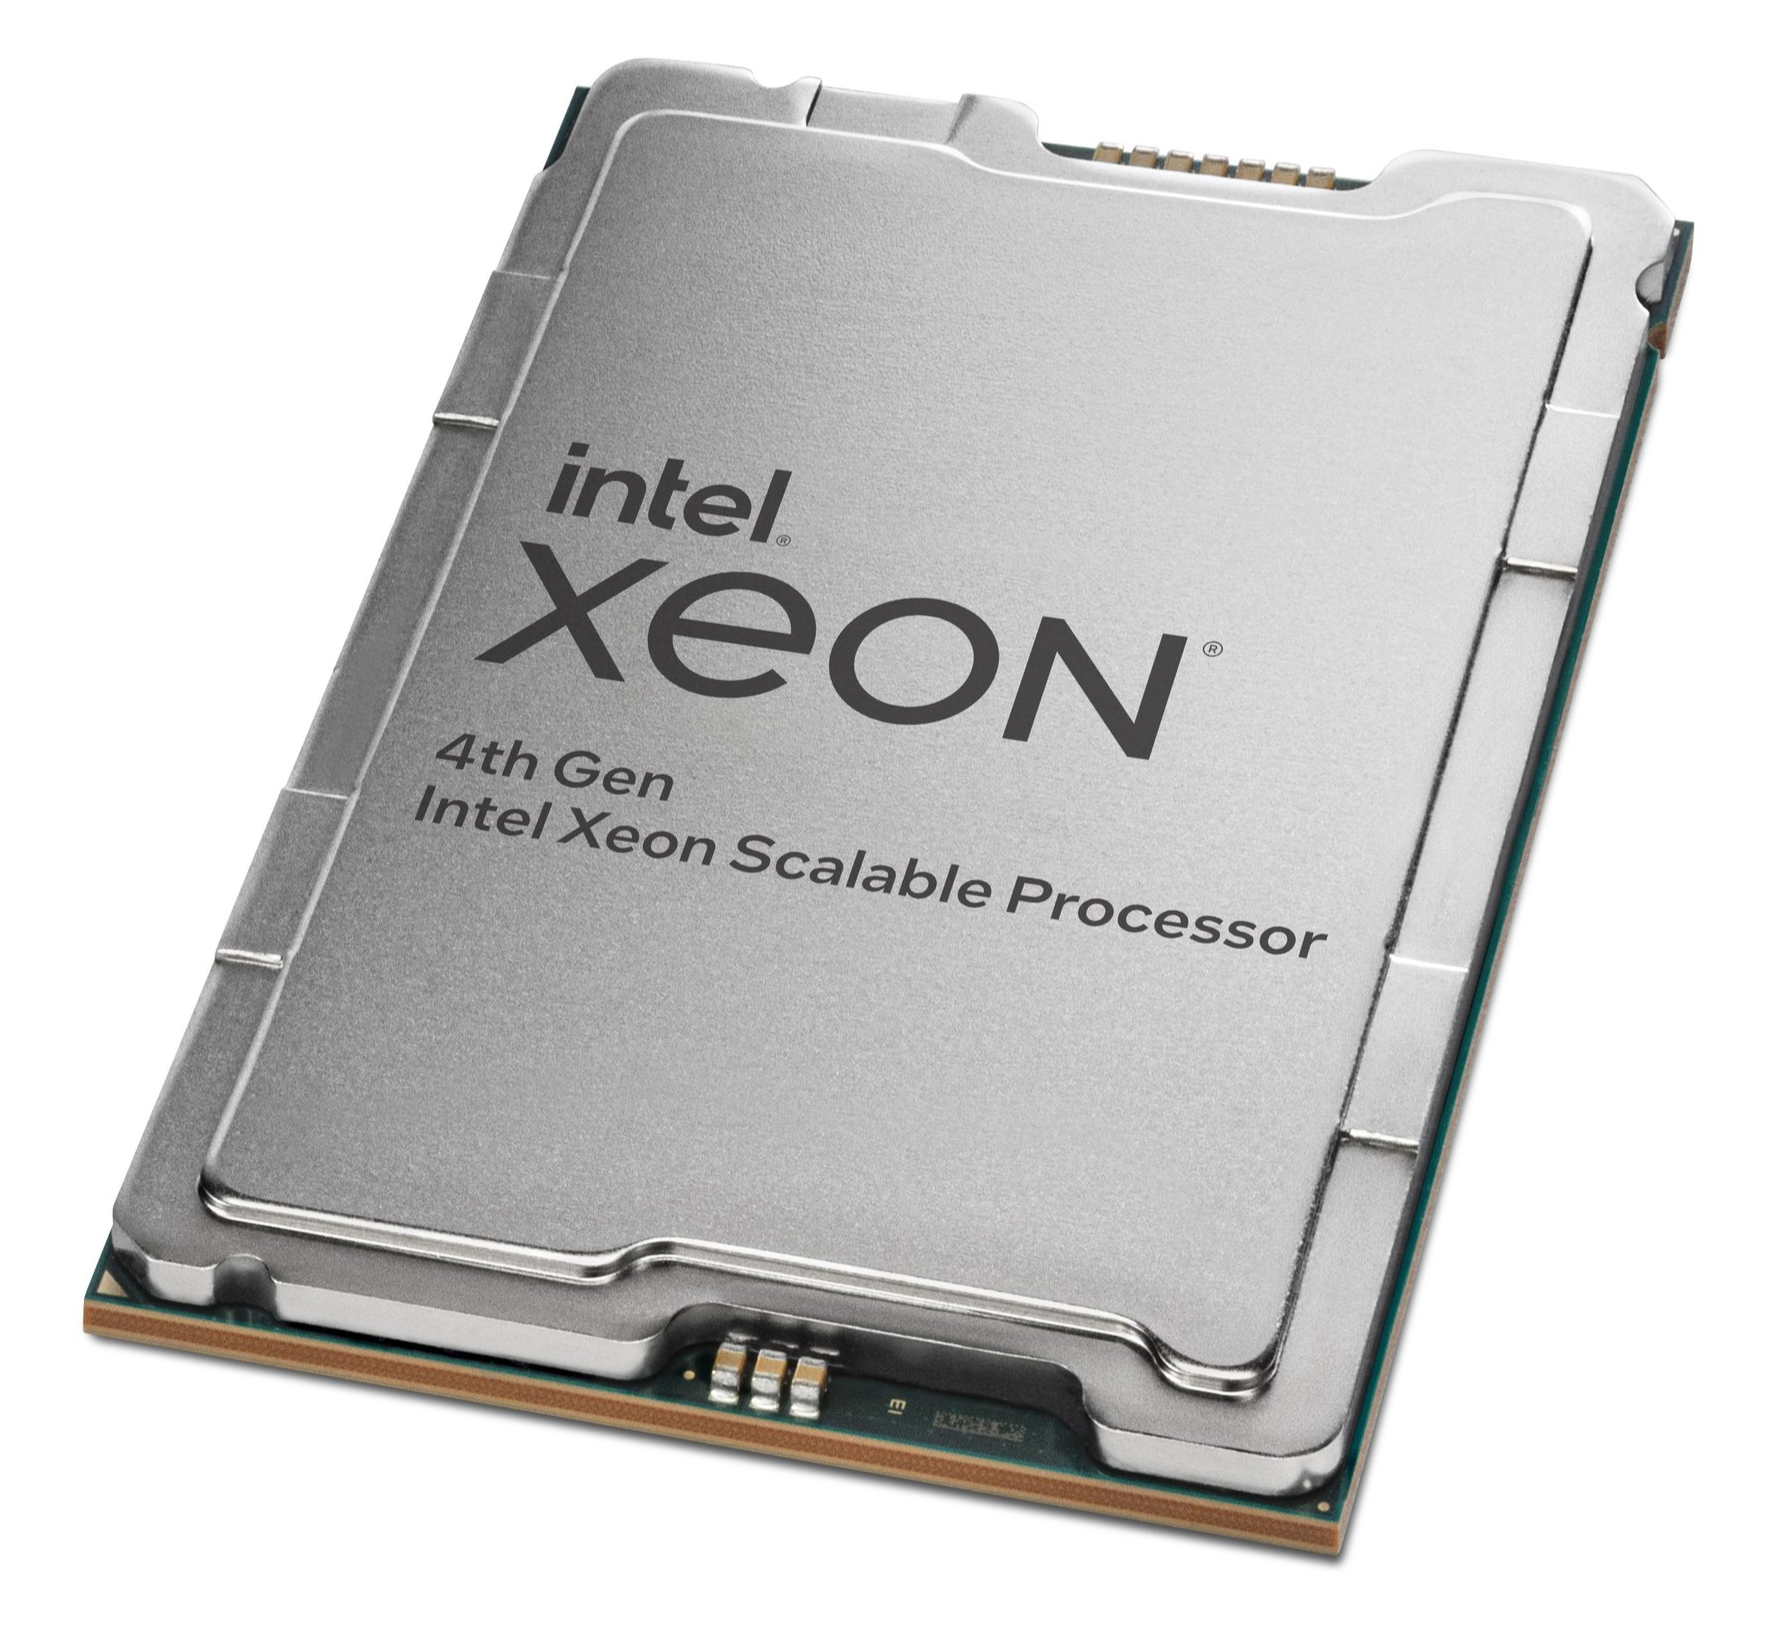 Intel ra mắt loạt CPU máy chủ mới, Xeon Scalable thế hệ 4, các mẫu CPU và GPU dòng Xeon Max - Ảnh 2.